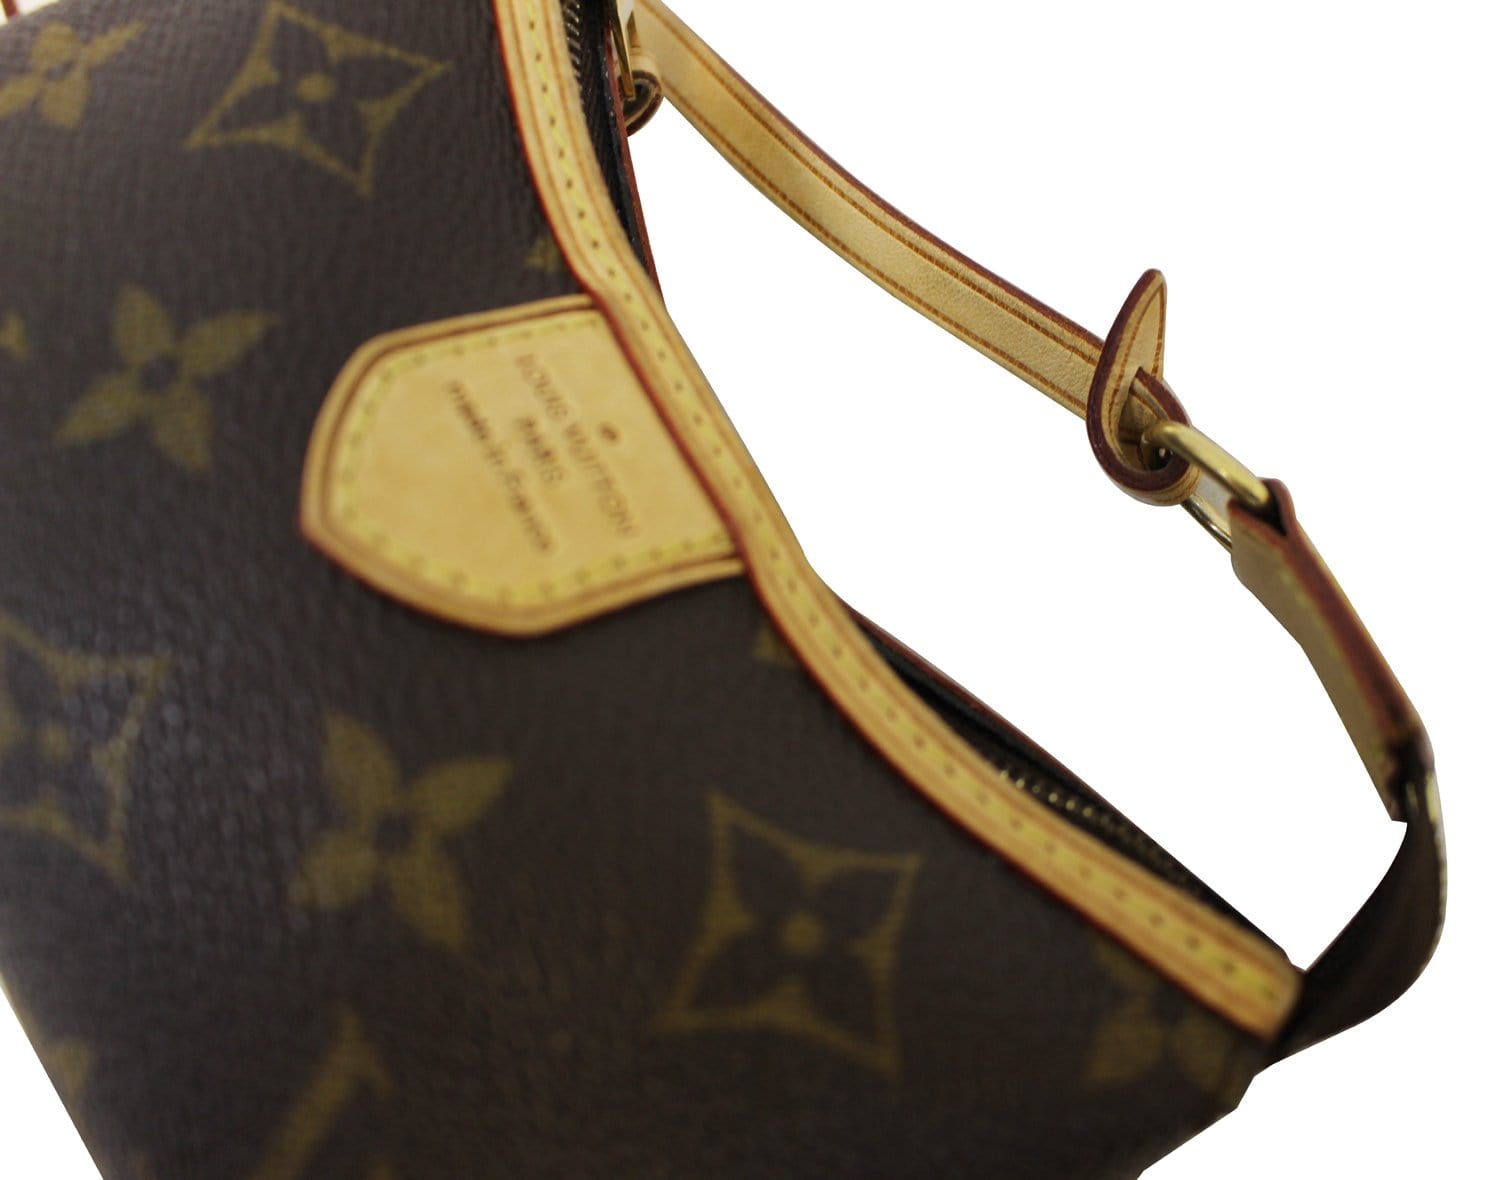 Louis Vuitton Mini Pochette Delightful Bag - Farfetch